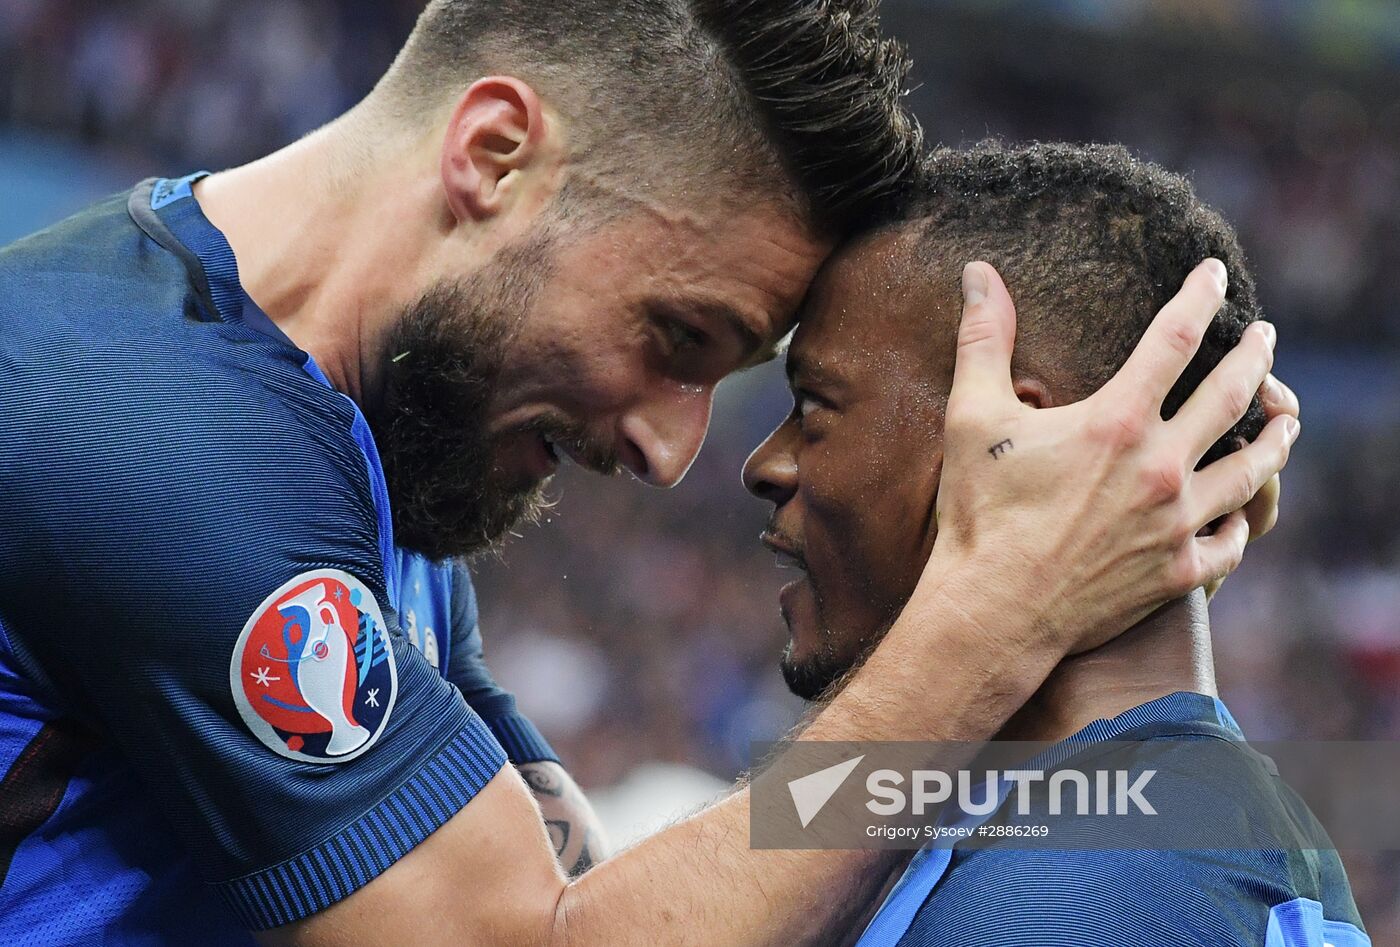 UEFA Euro 2016. France vs. Iceland